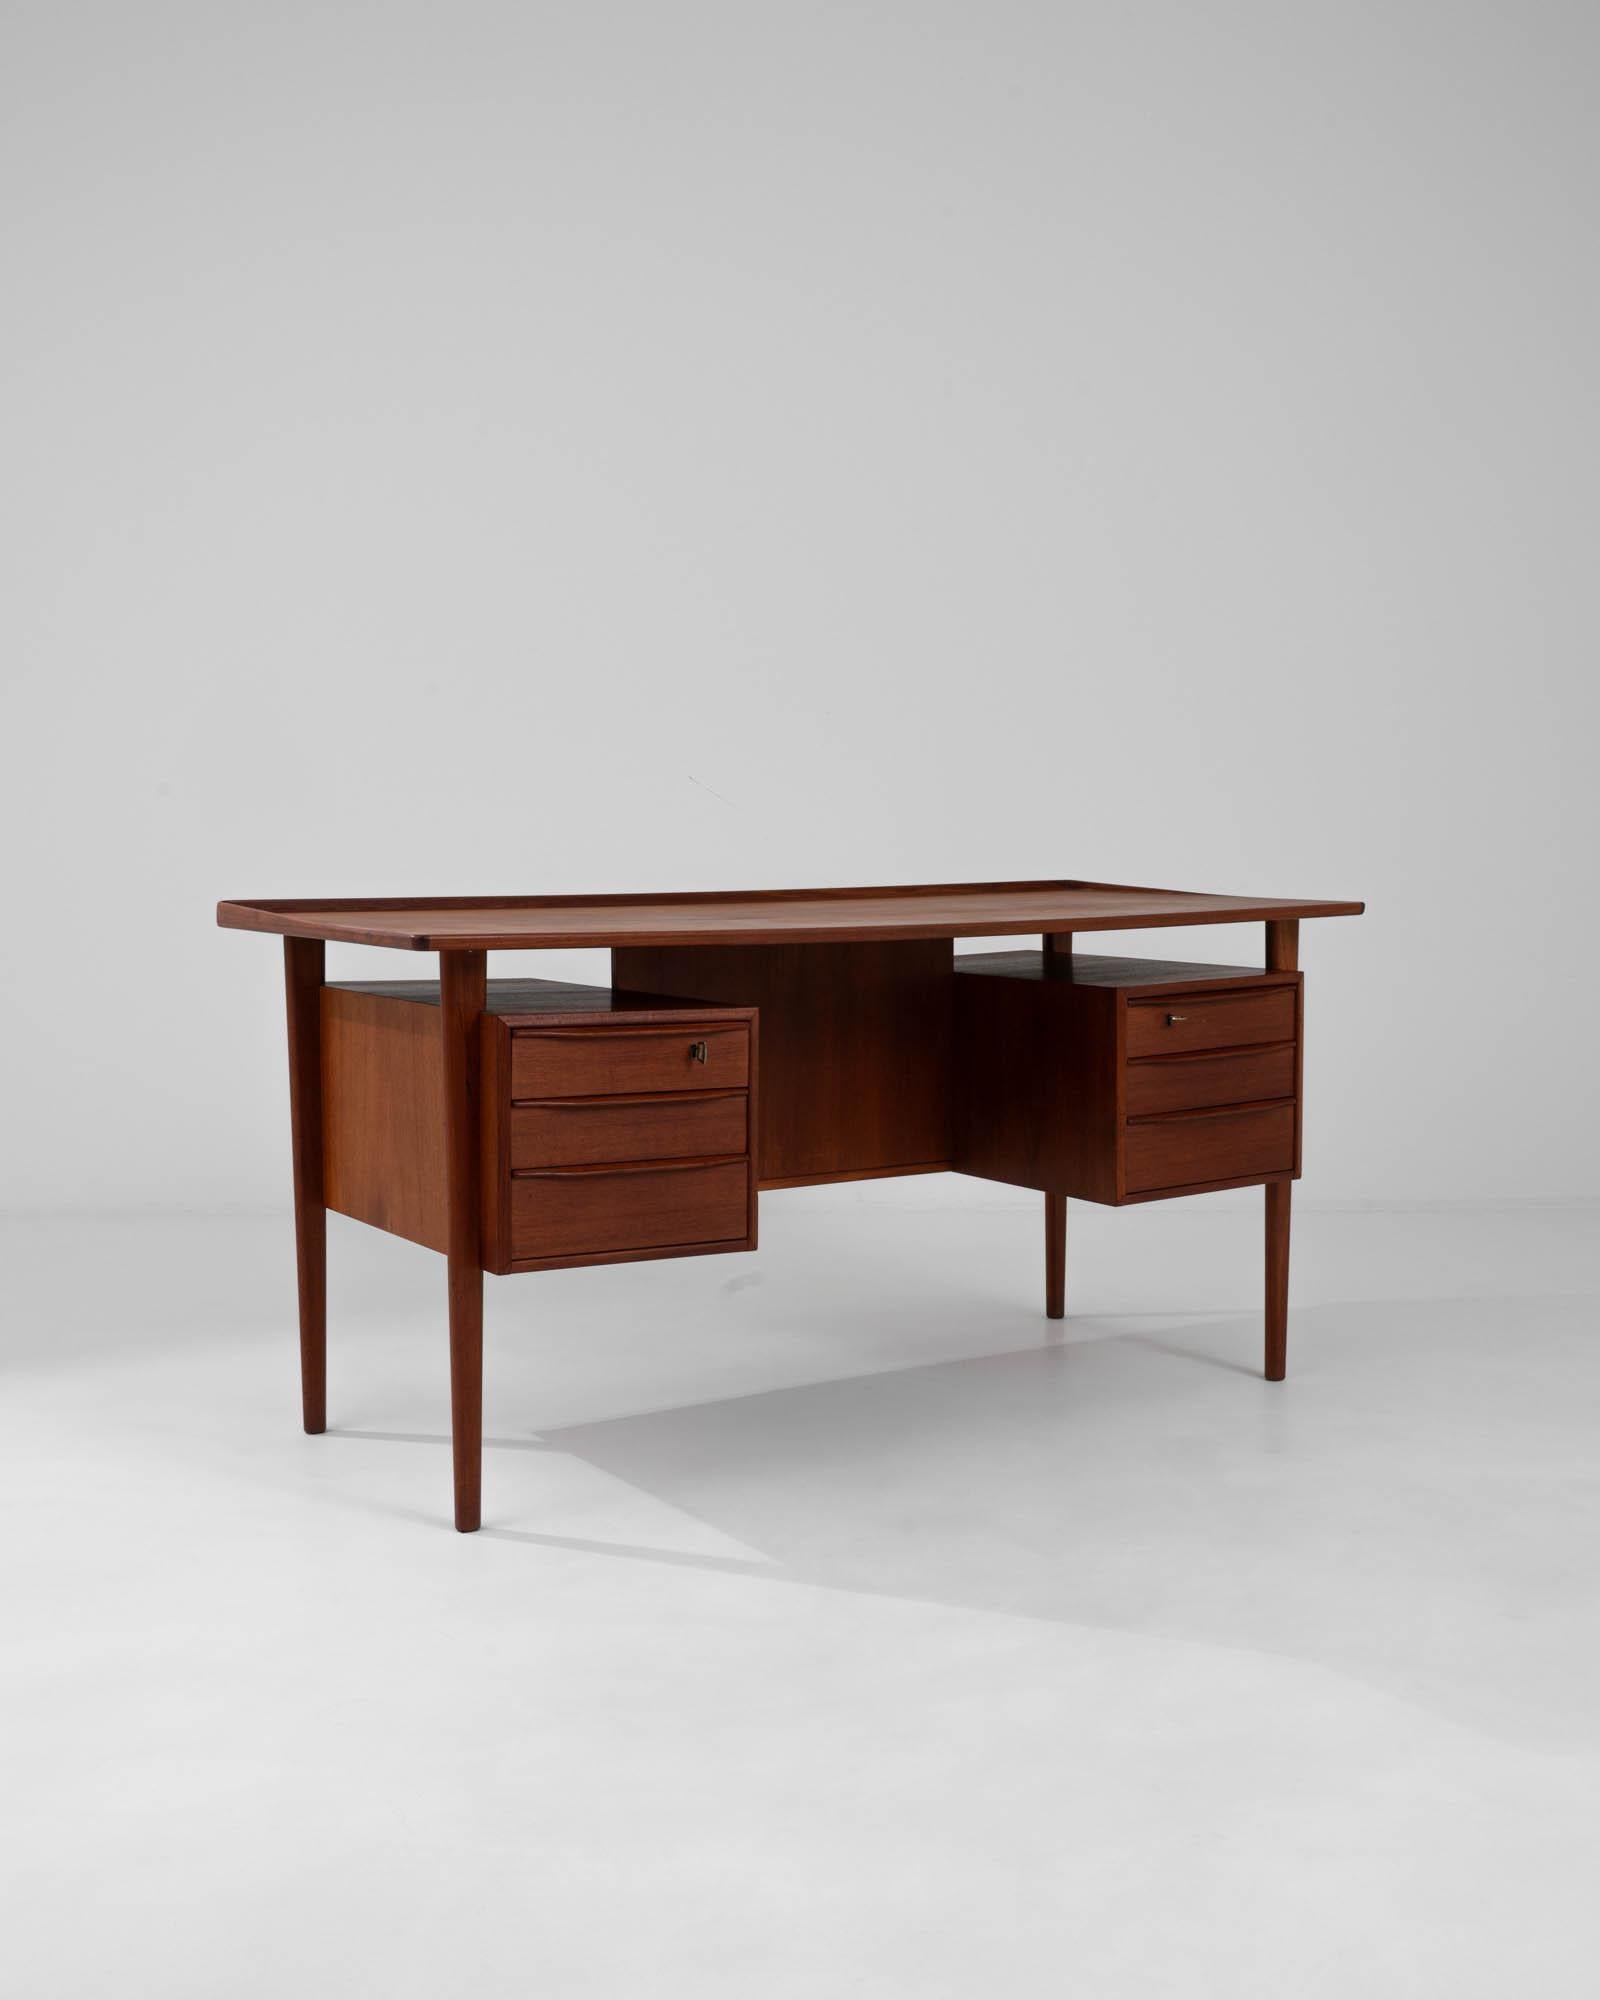 Verleihen Sie Ihrem Arbeitsplatz die zeitlose Eleganz des skandinavischen Designs mit diesem dänischen Teakholz-Schreibtisch von Peter Løvig Nielsen aus dem 20. Jahrhundert. Dieser Schreibtisch aus edlem Teakholz, das für seine Langlebigkeit und